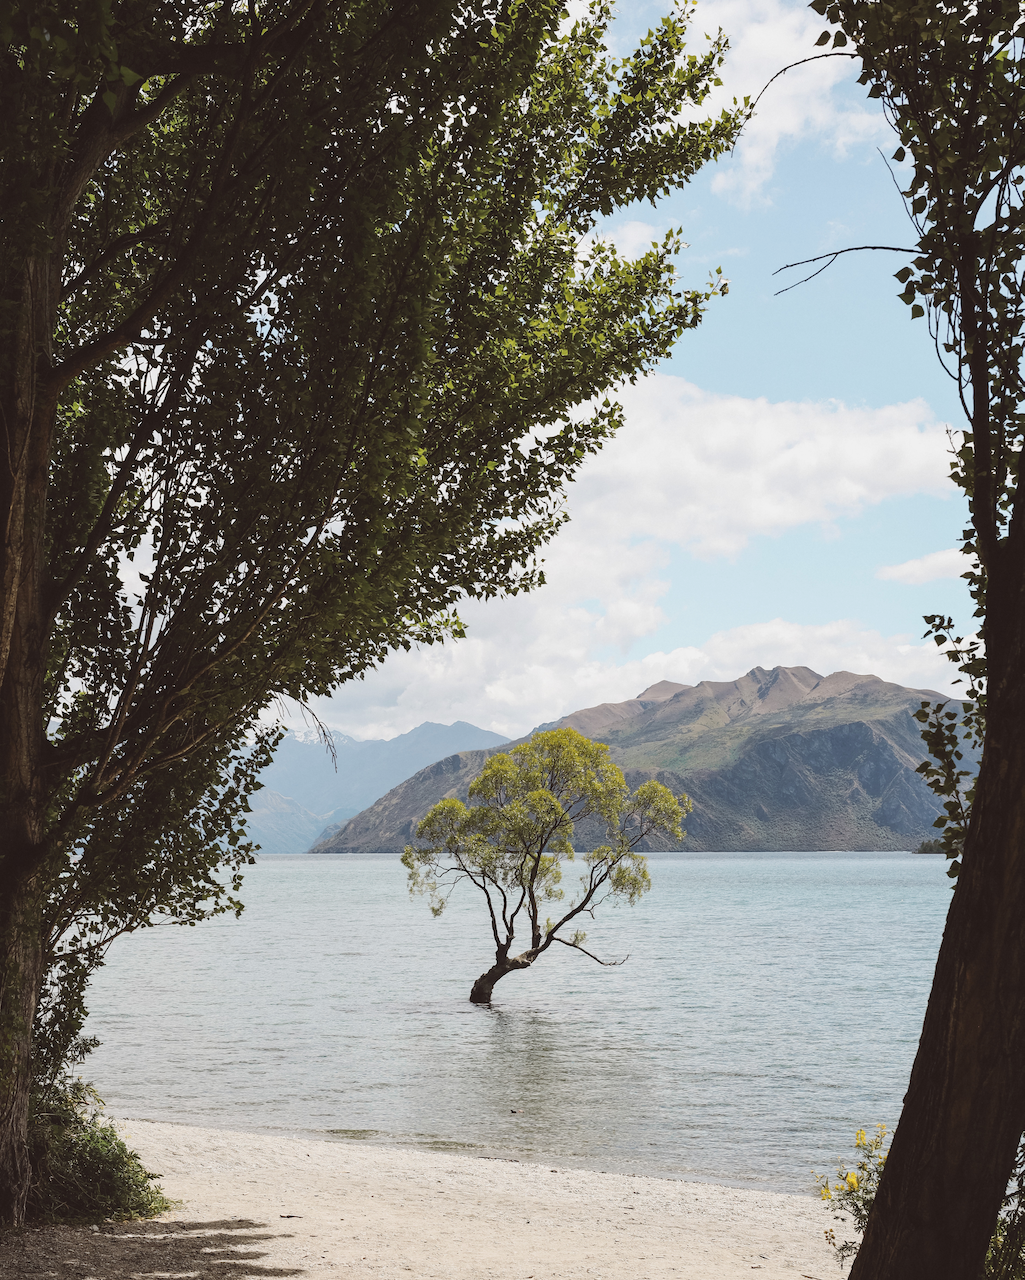 L'abre de Wanaka entouré de verdure - Lac Wanaka - Nouvelle-Zélande